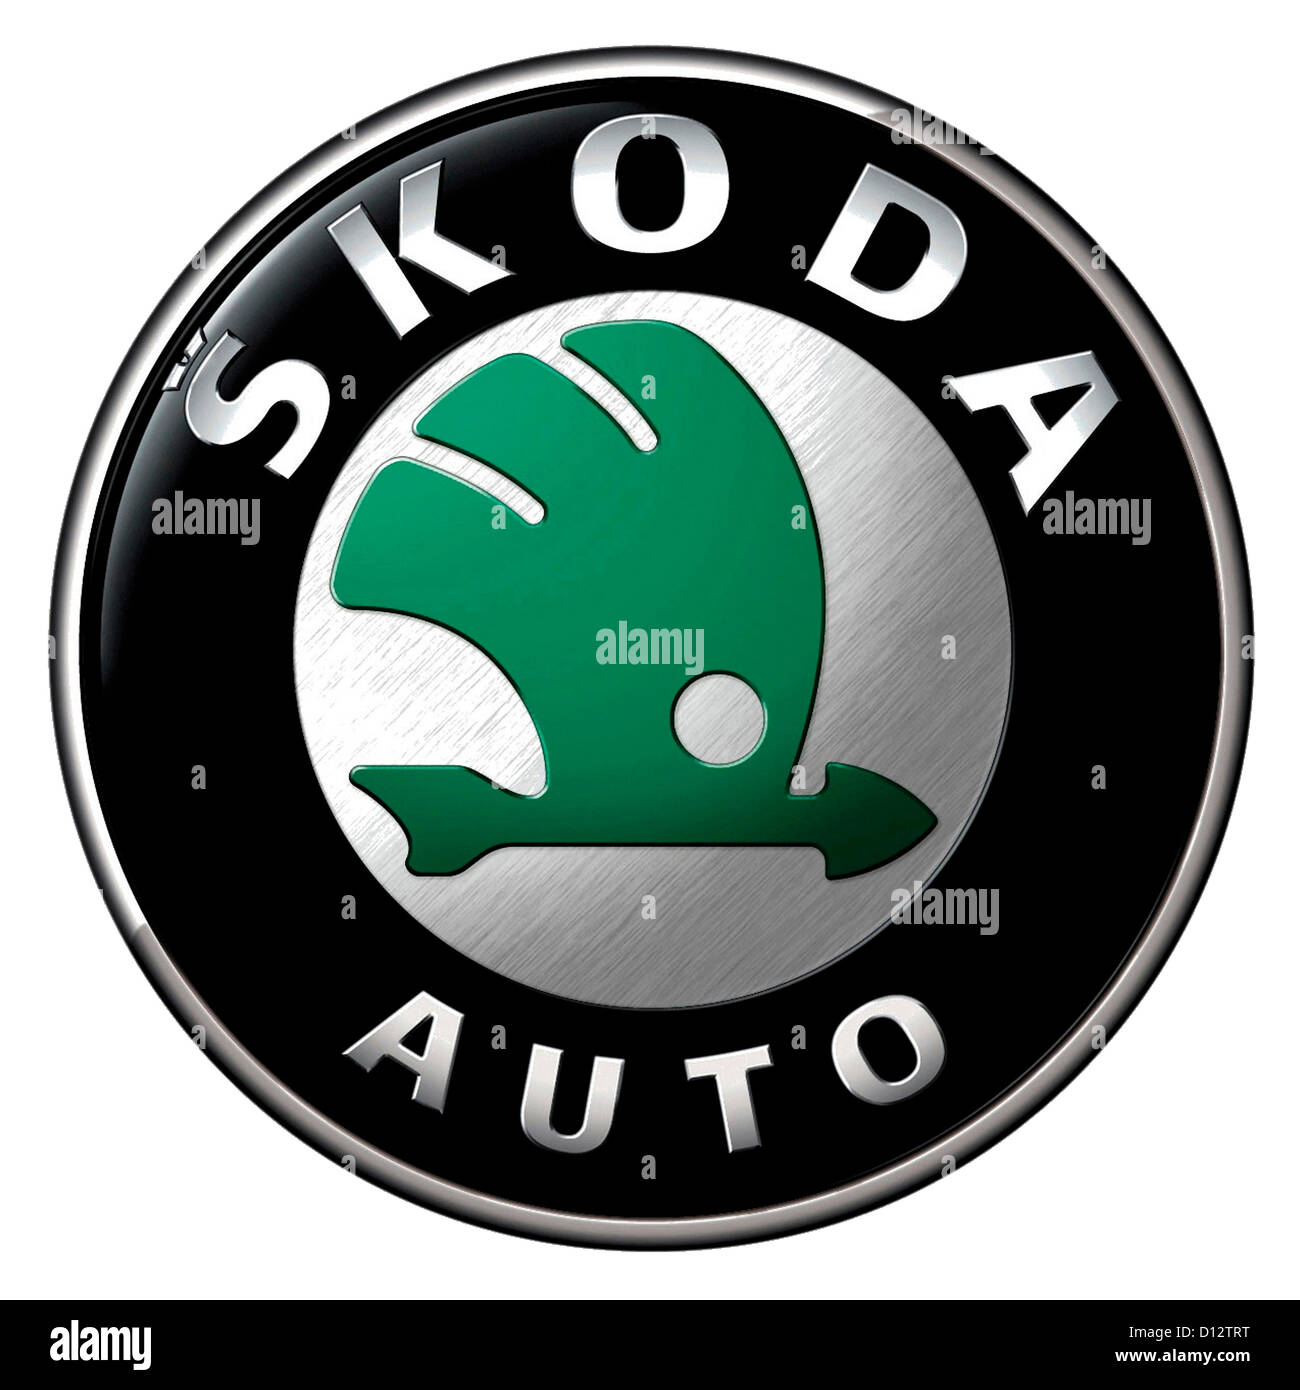 Firmen-Logo des tschechischen Automobilherstellers Skoda mit Sitz in Mlada Boleslav. Stockfoto